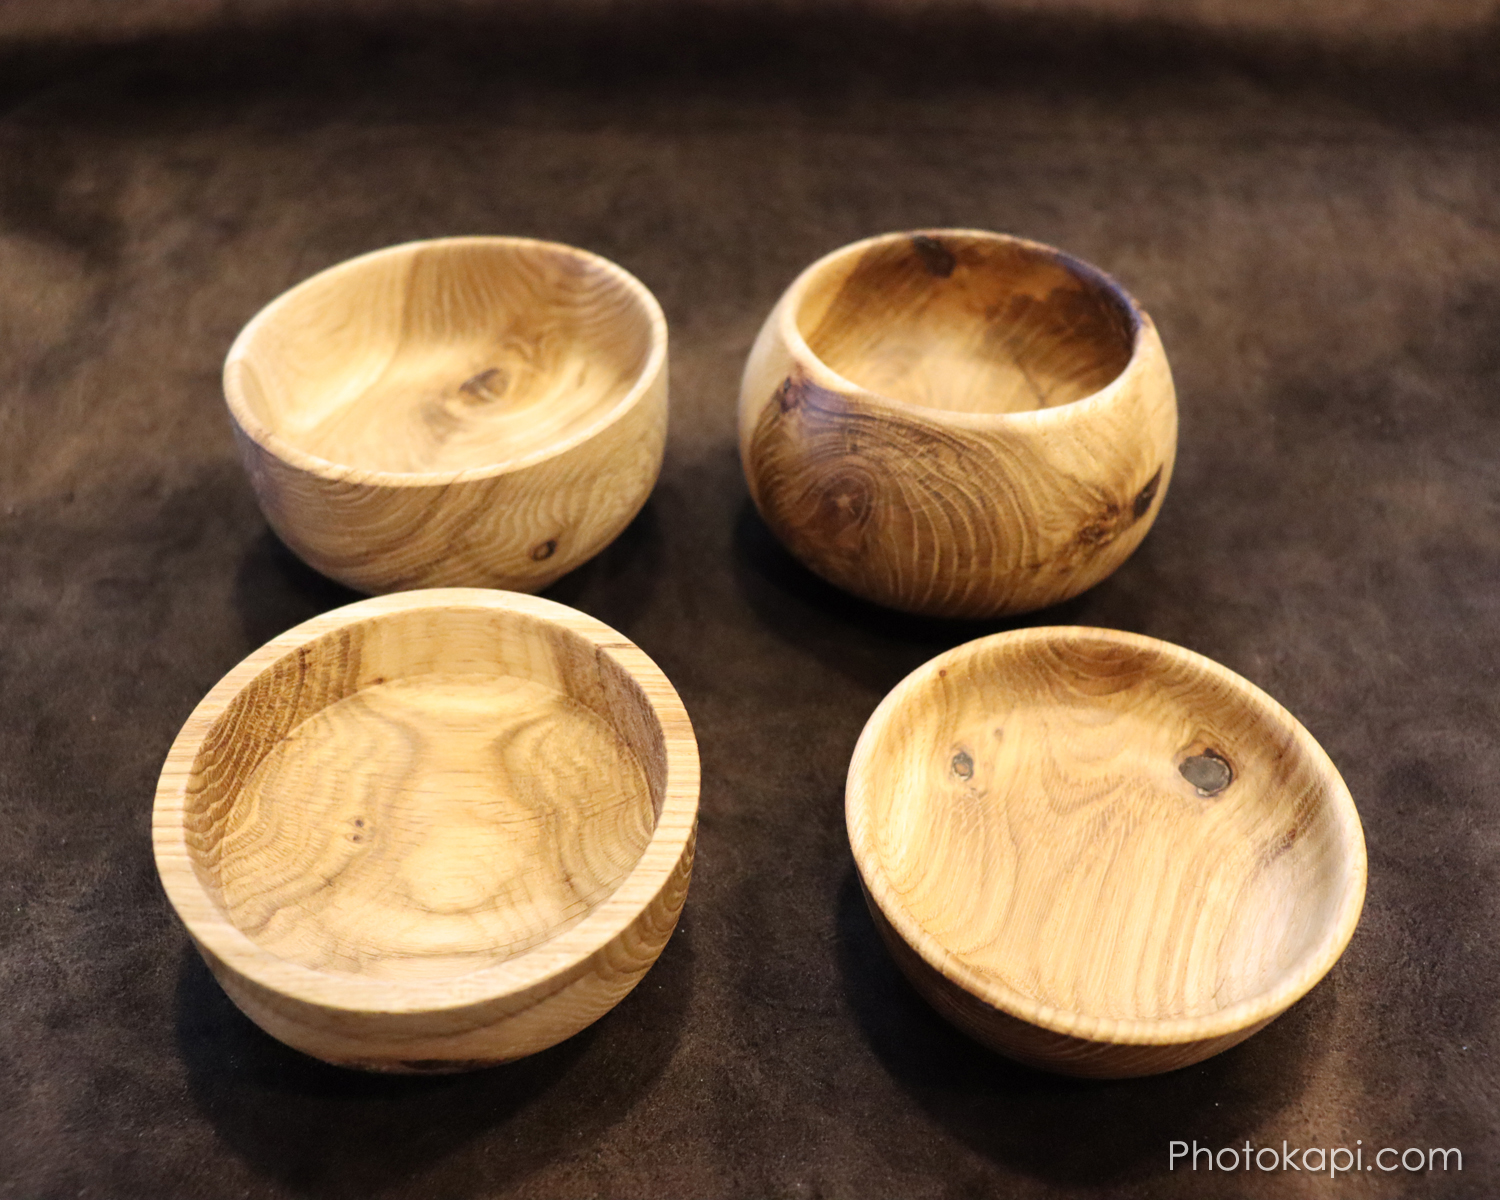 New to me Lathe and Wooden Bowls – Photokapi.com